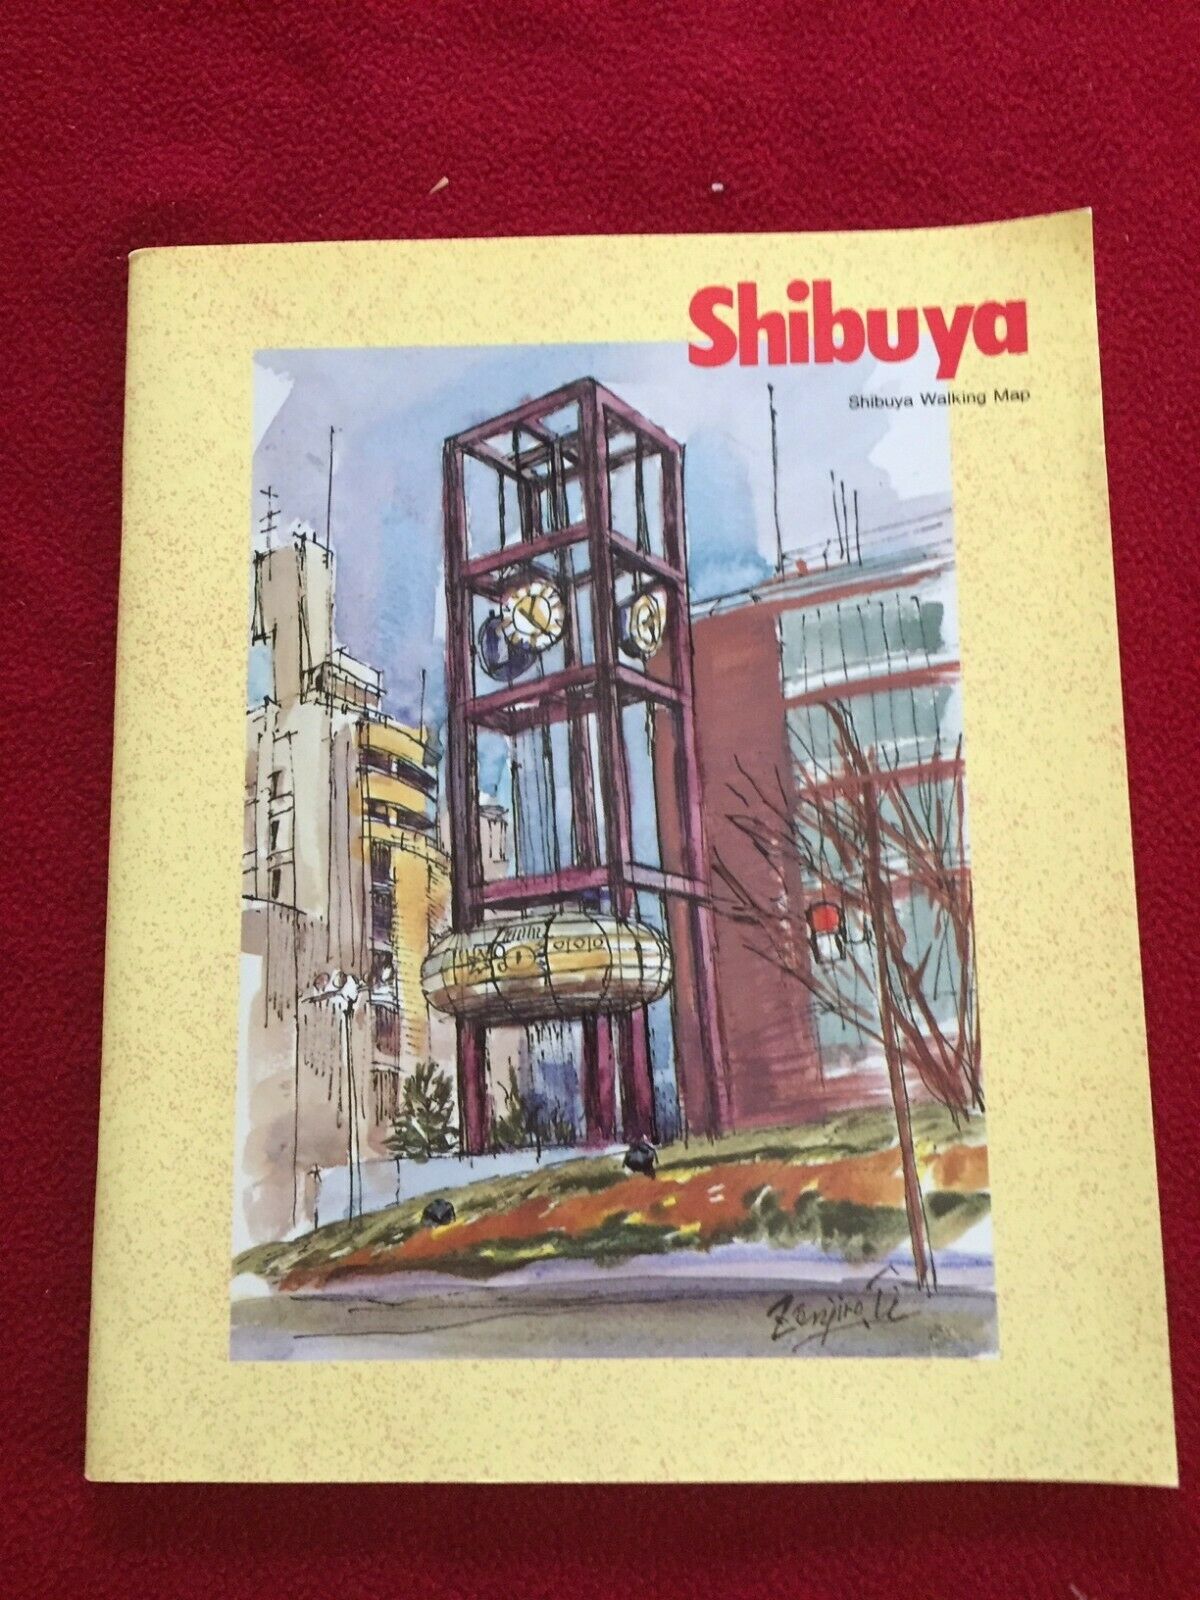 Shibuya Walking Map In English Paperback Tokyo Japan Illustrated Tourist Guide